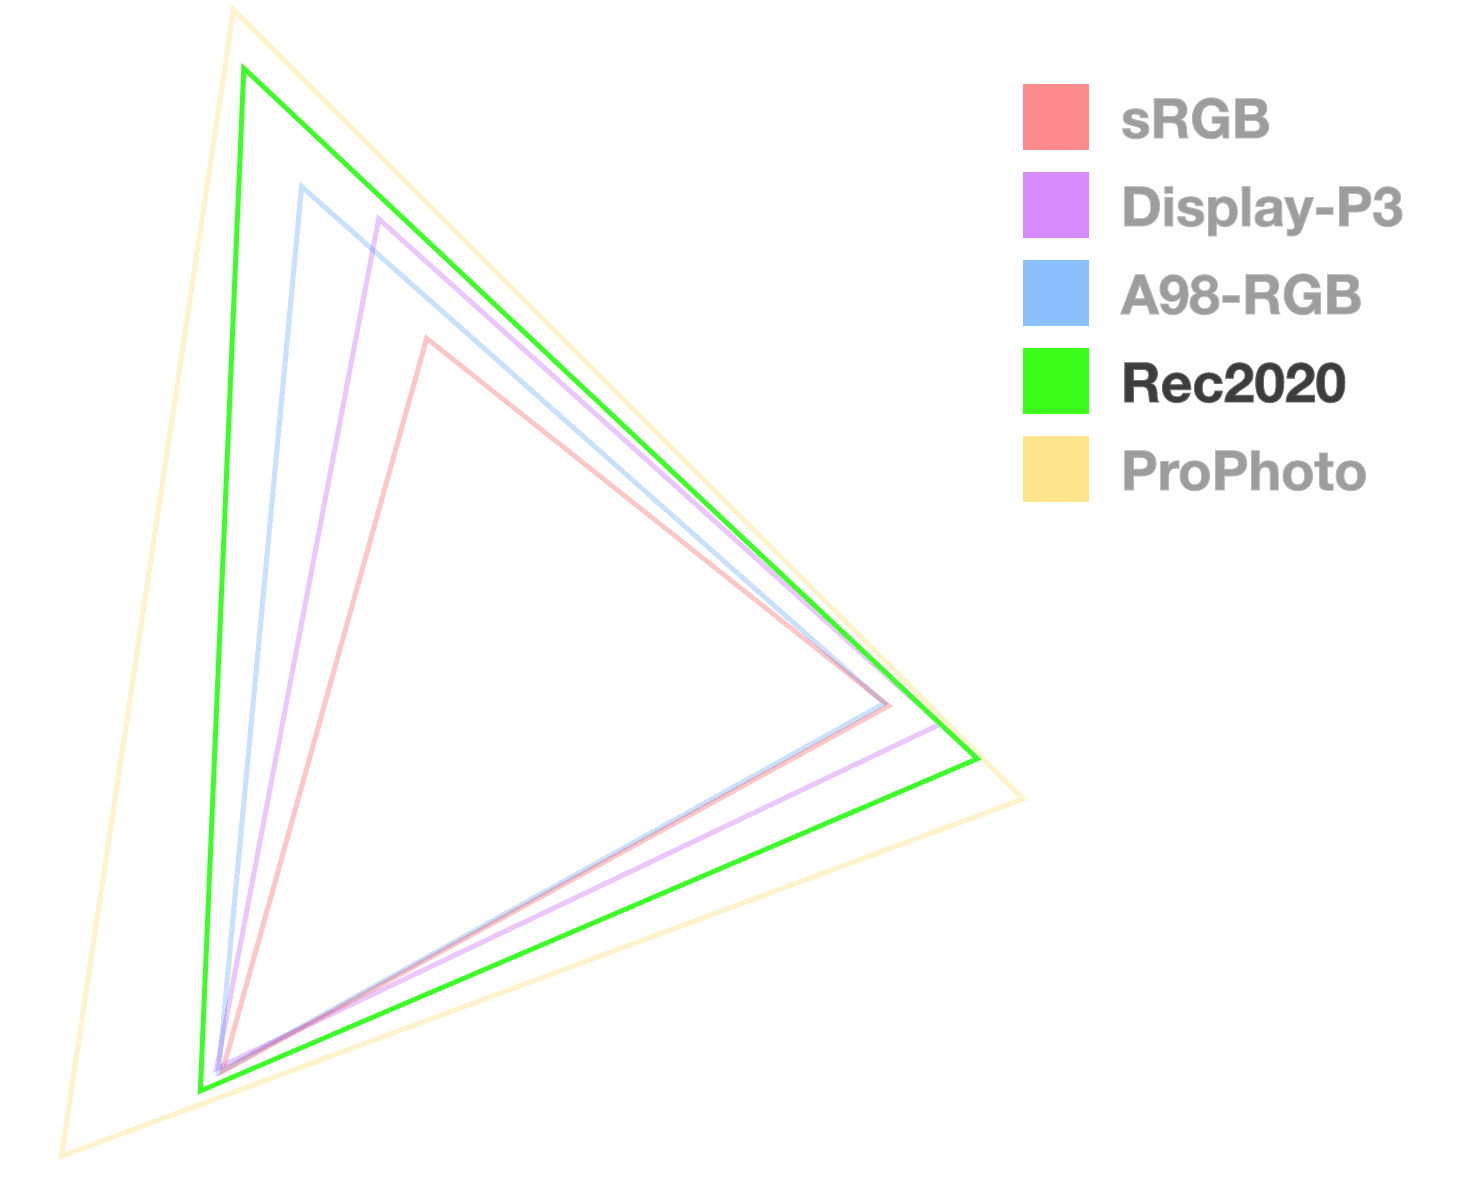 مثلث Rec2020 تنها یک مثلث کاملاً مات است که به تجسم اندازه وسعت کمک می کند. به نظر می رسد 2 از بزرگترین.